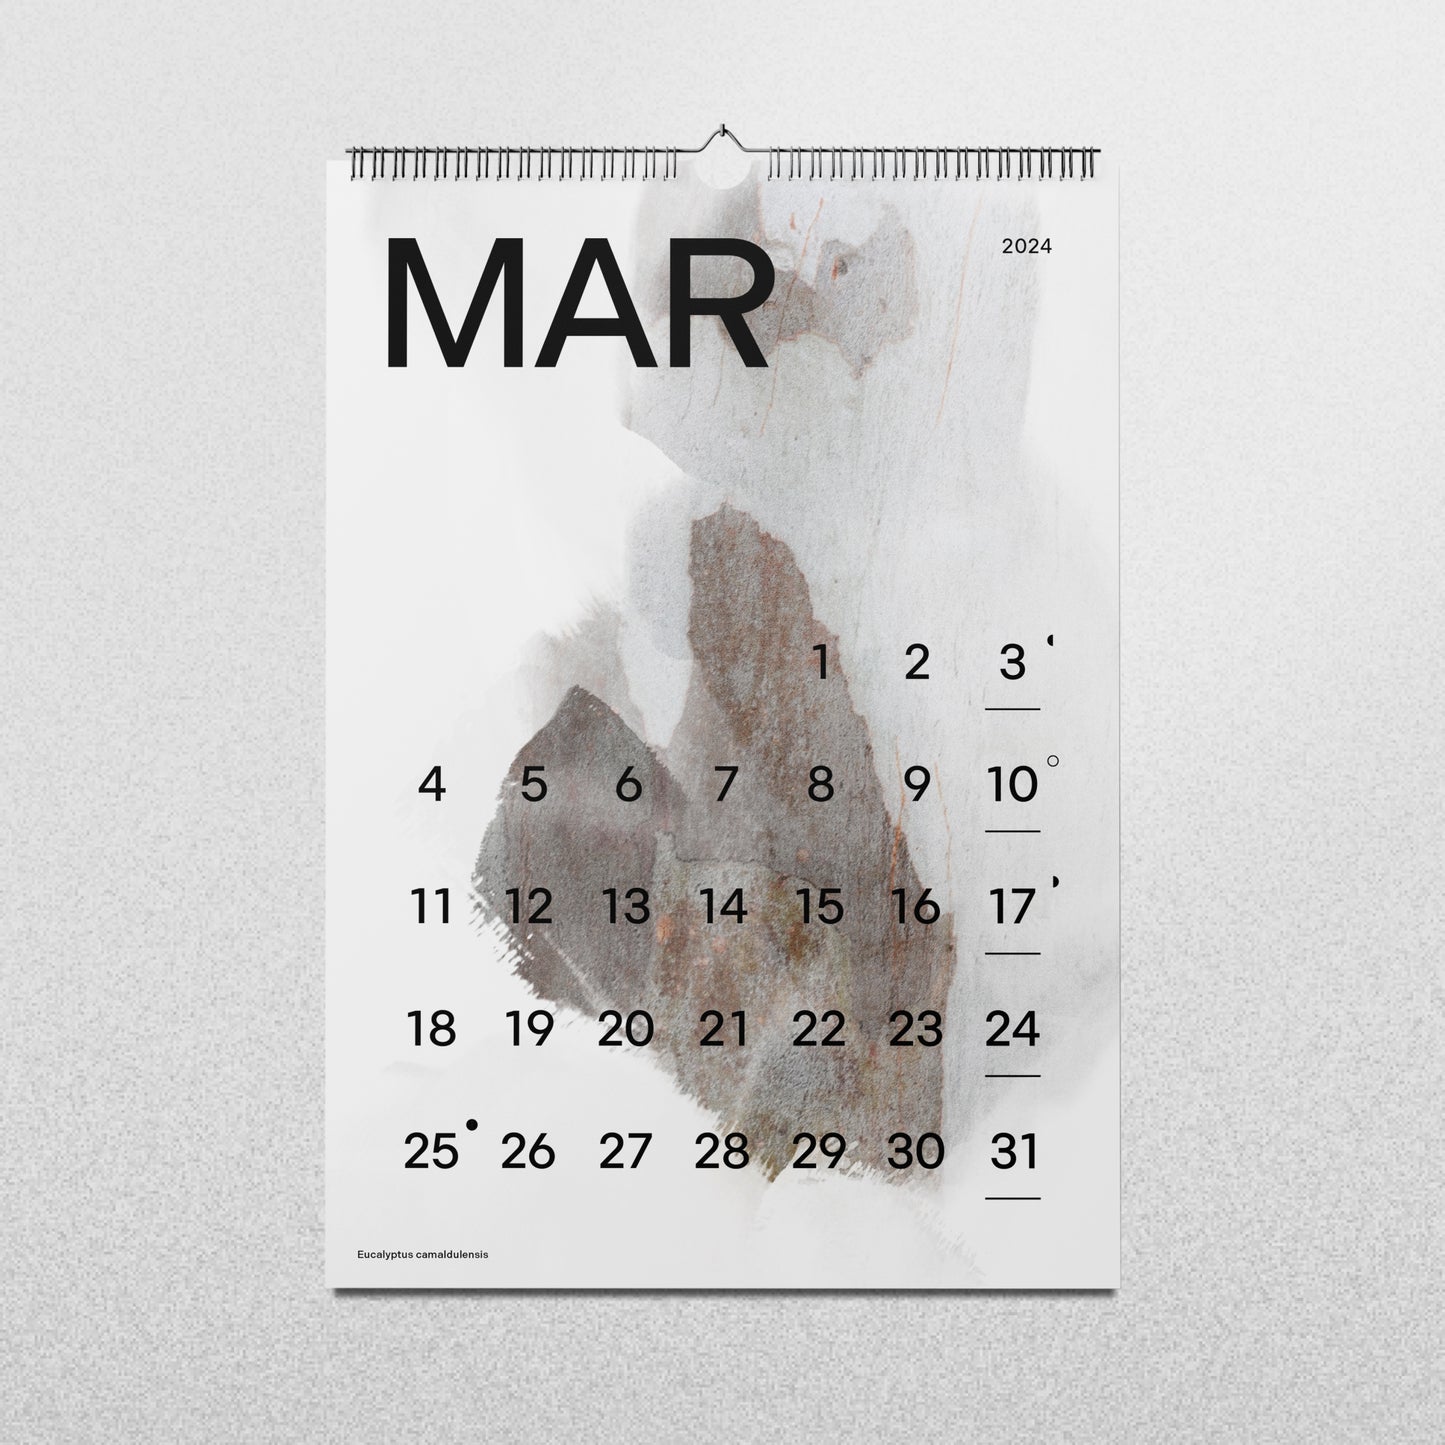 Calendario MTR'24